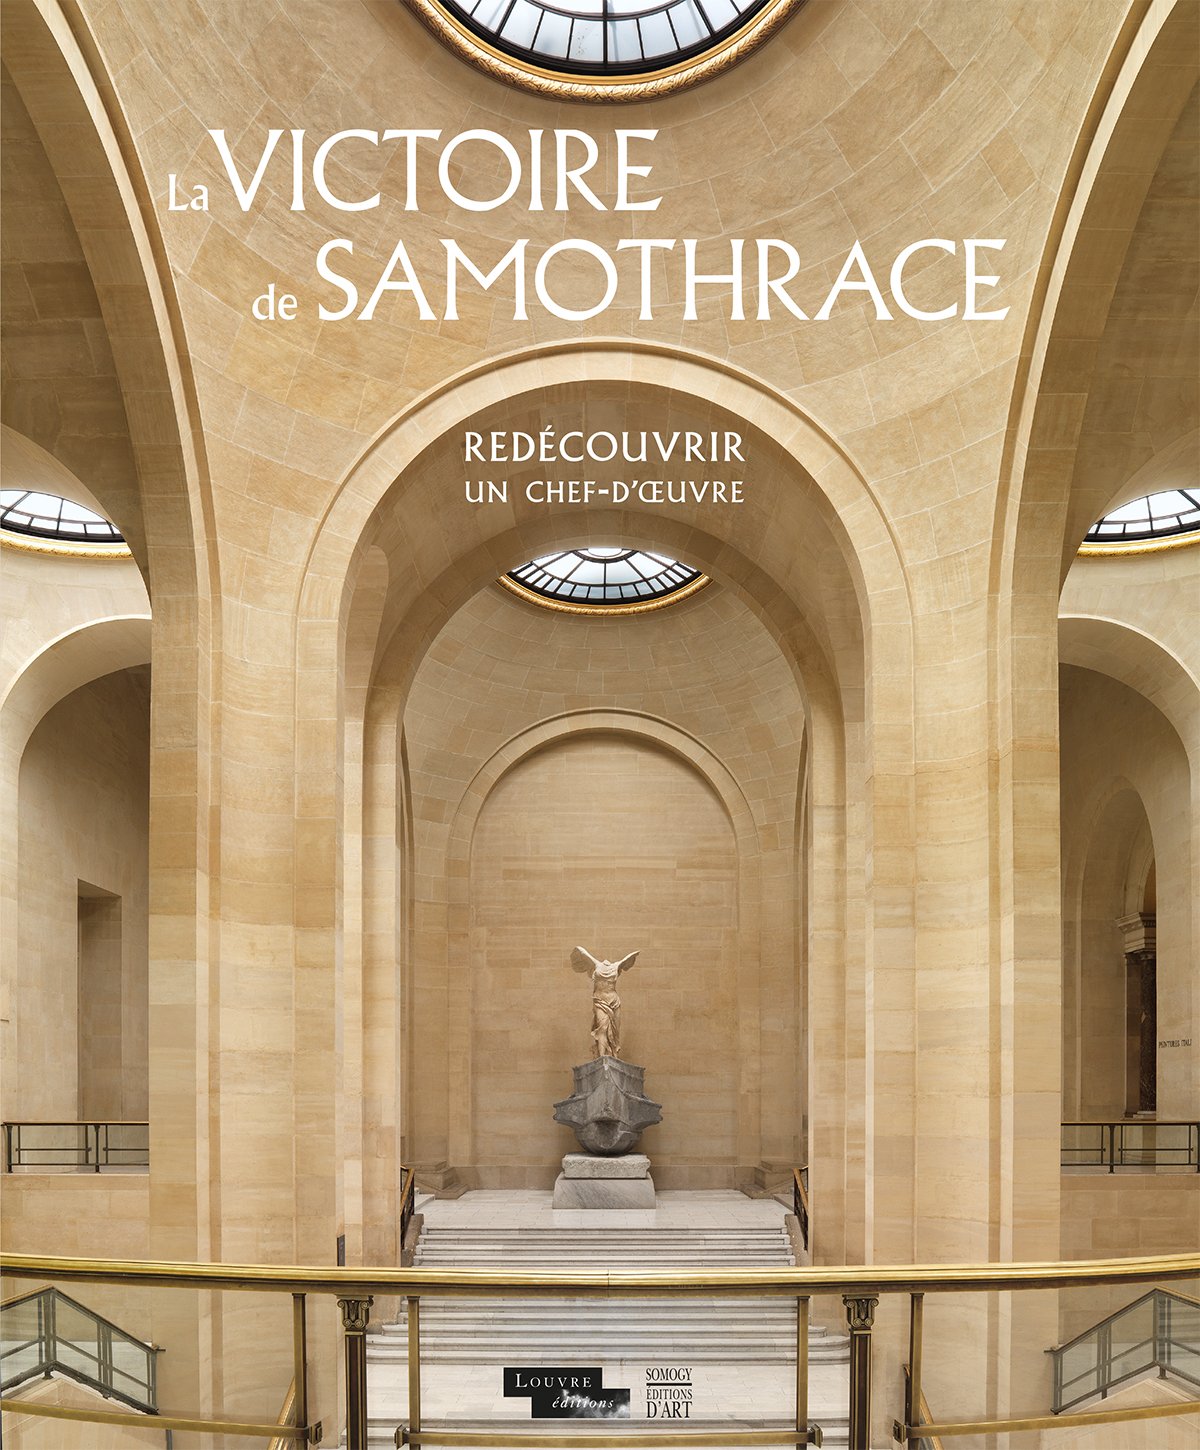 La Victoire de Samothrace. Redécouvrir un chef-d'oeuvre, 2014, 20 p.